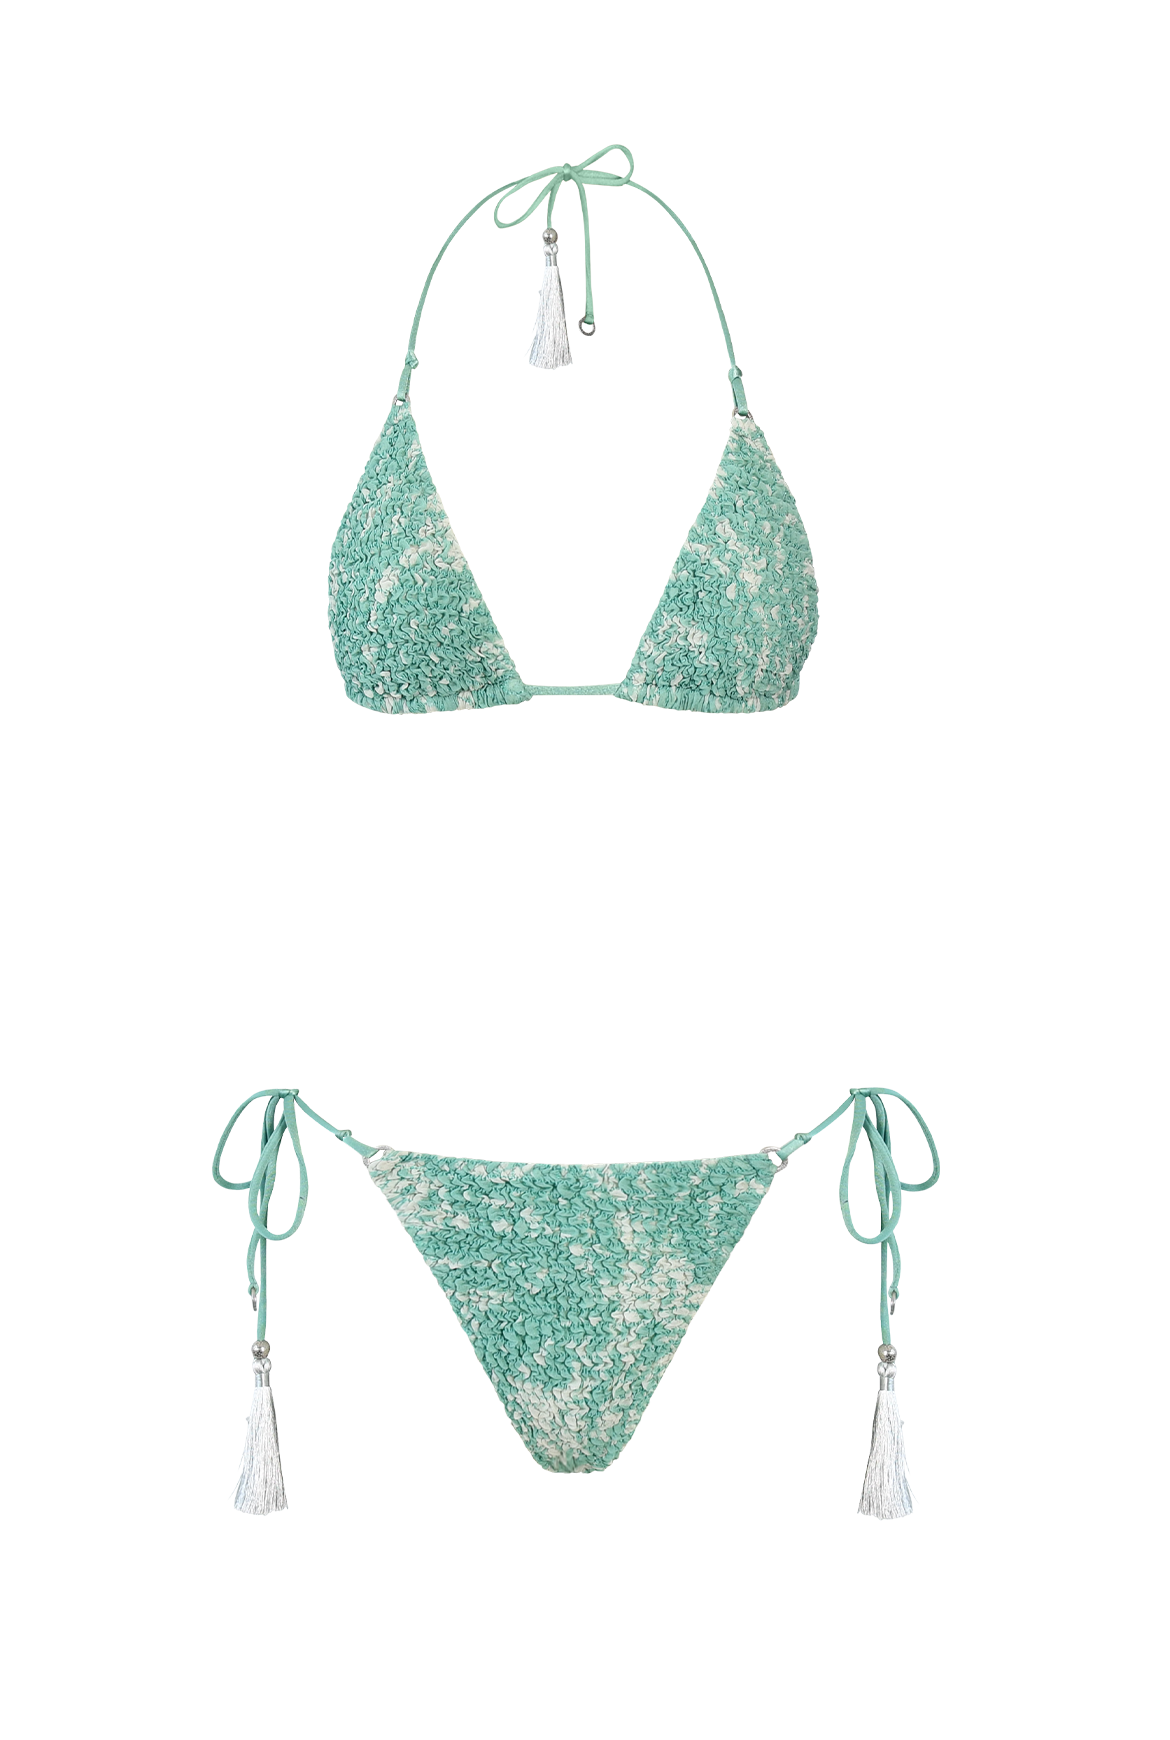 Ocean Oyster Nido Bikini triangle